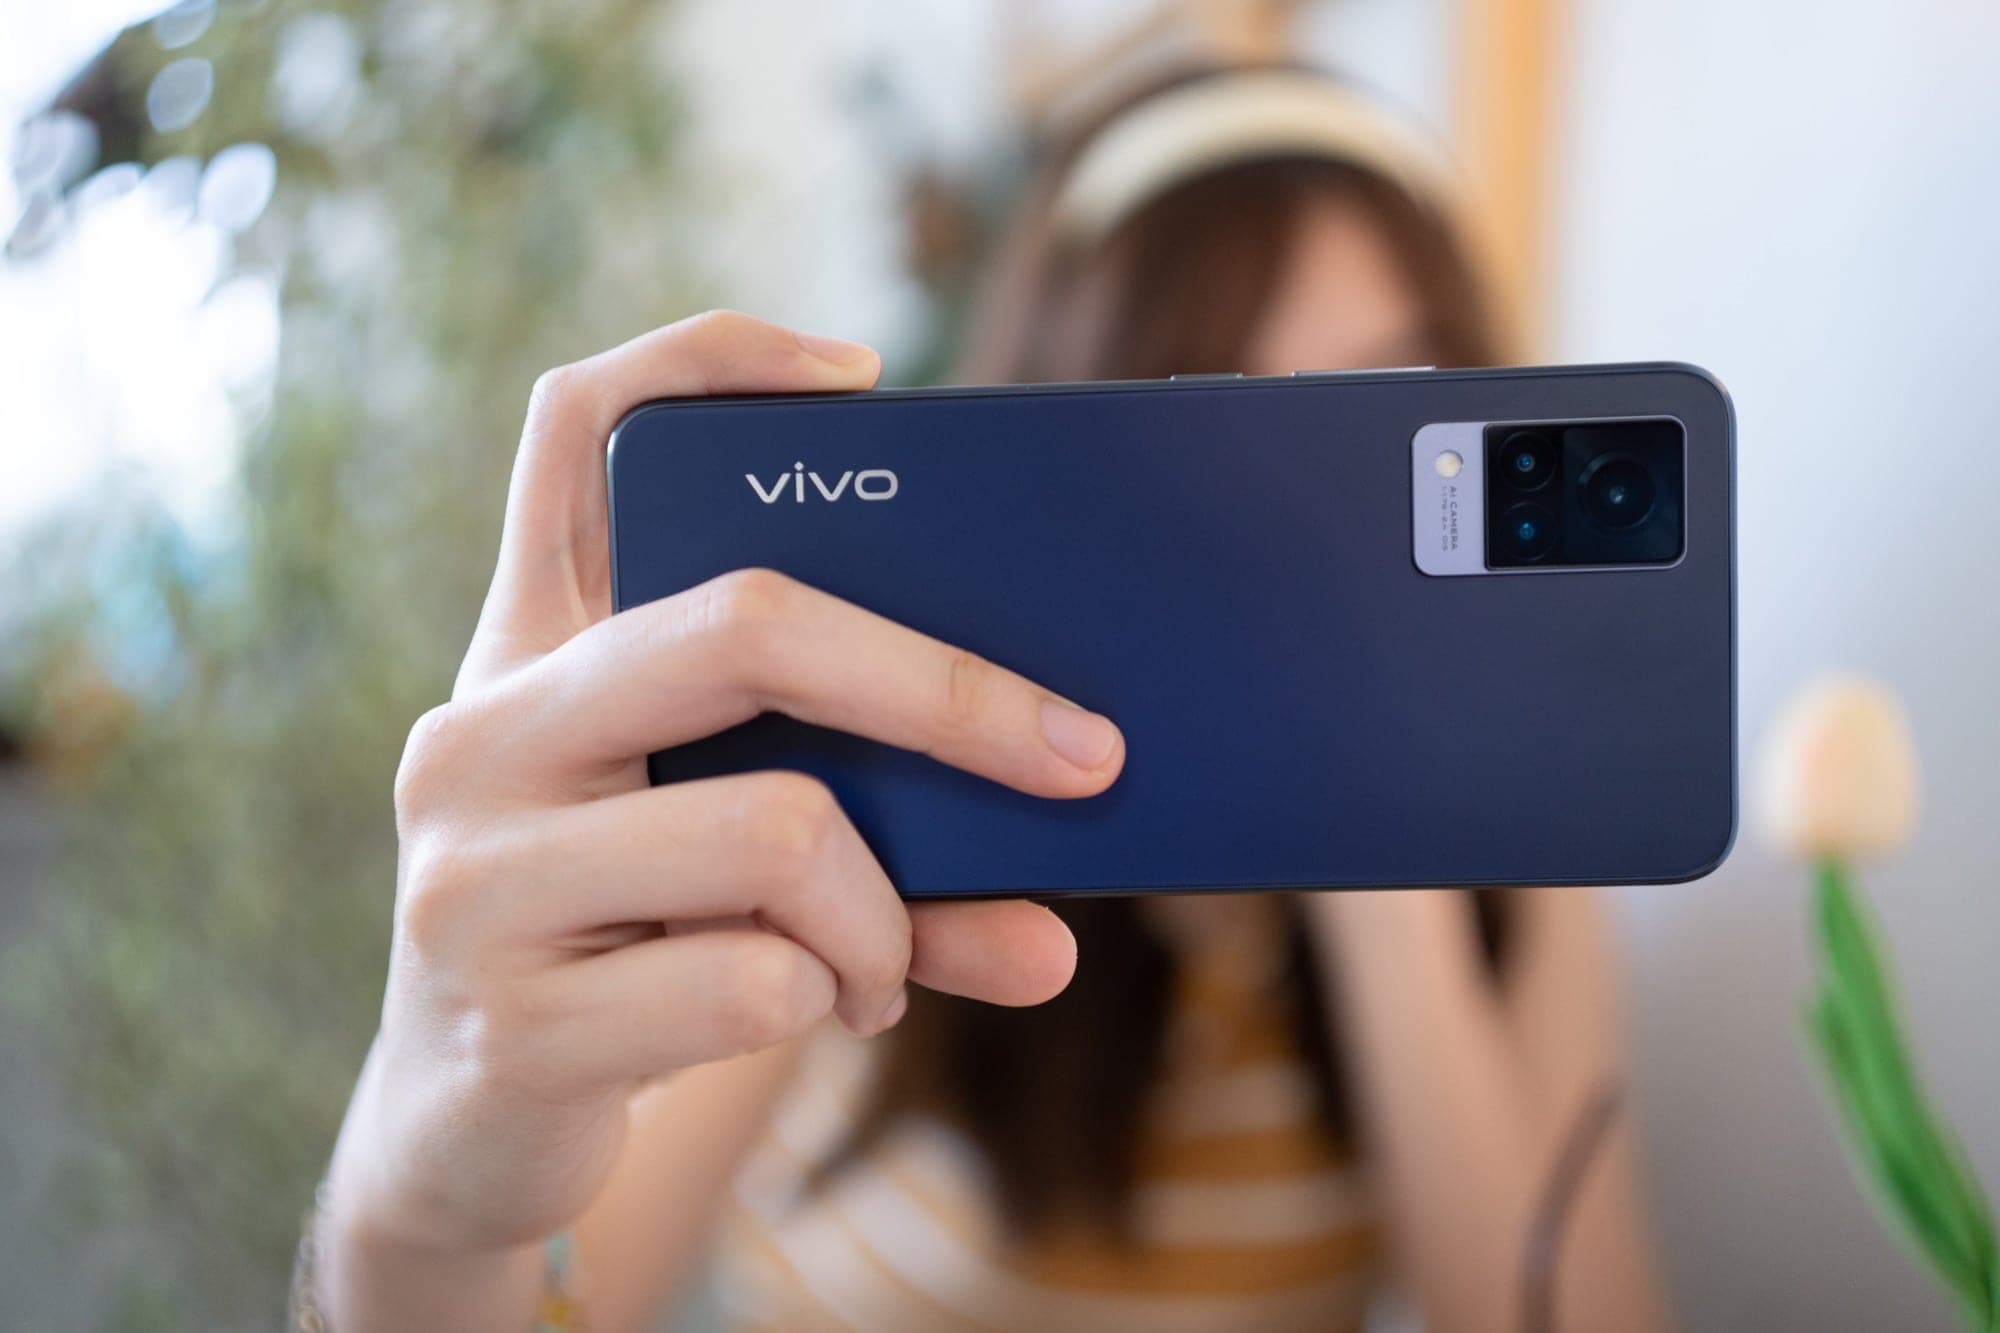 รีวิว Vivo V21 5G สมาร์ทโฟนที่กล้องหน้าดีเหมือนกล้องหลัง และแรมที่เป็นมากกว่าแรม 17